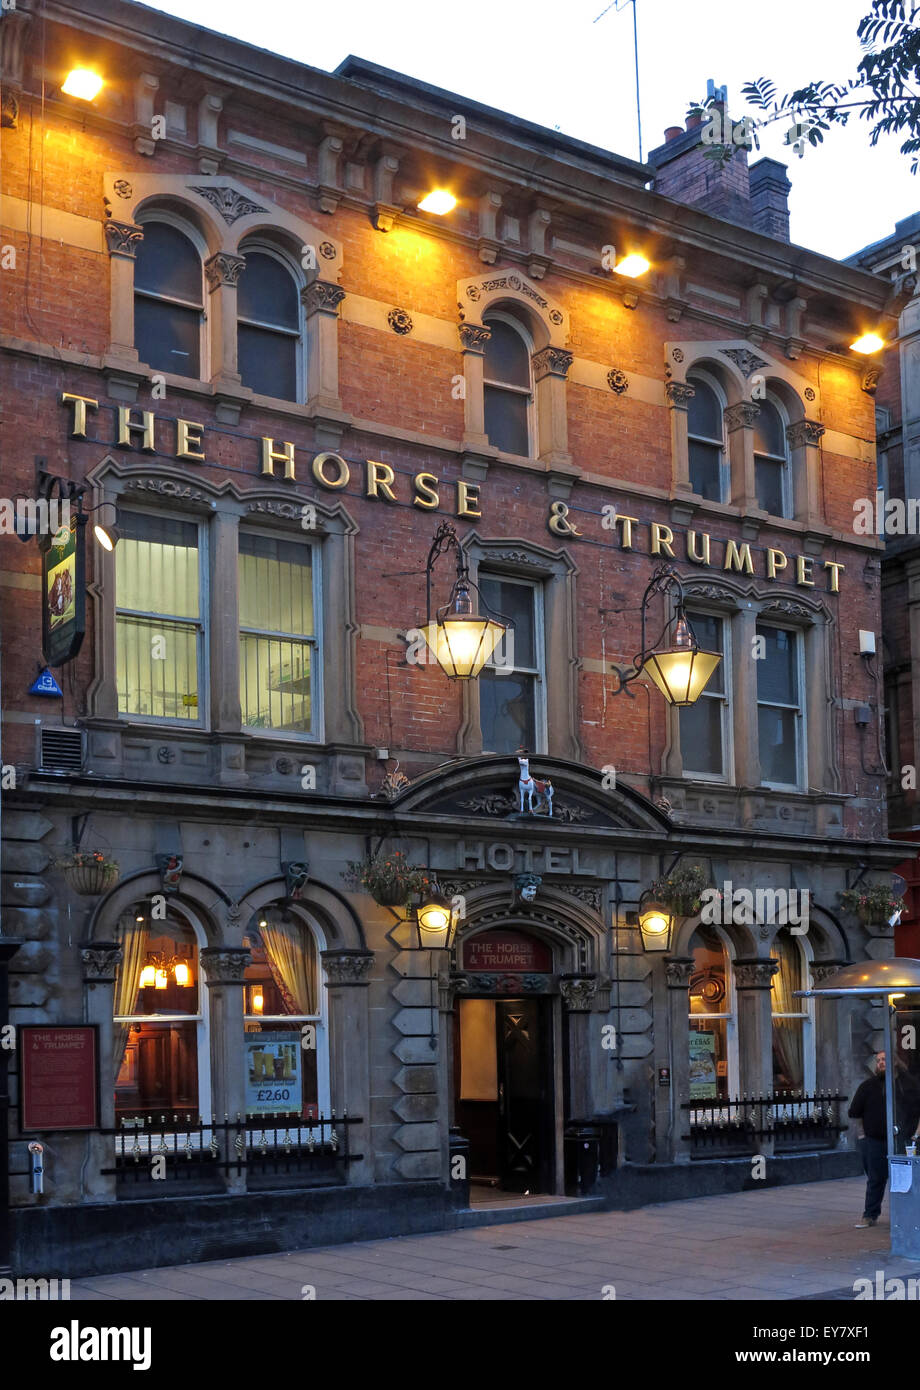 Le cheval et la trompette,pub Leeds la nuit, Yorkshire, Angleterre, Royaume-Uni Banque D'Images